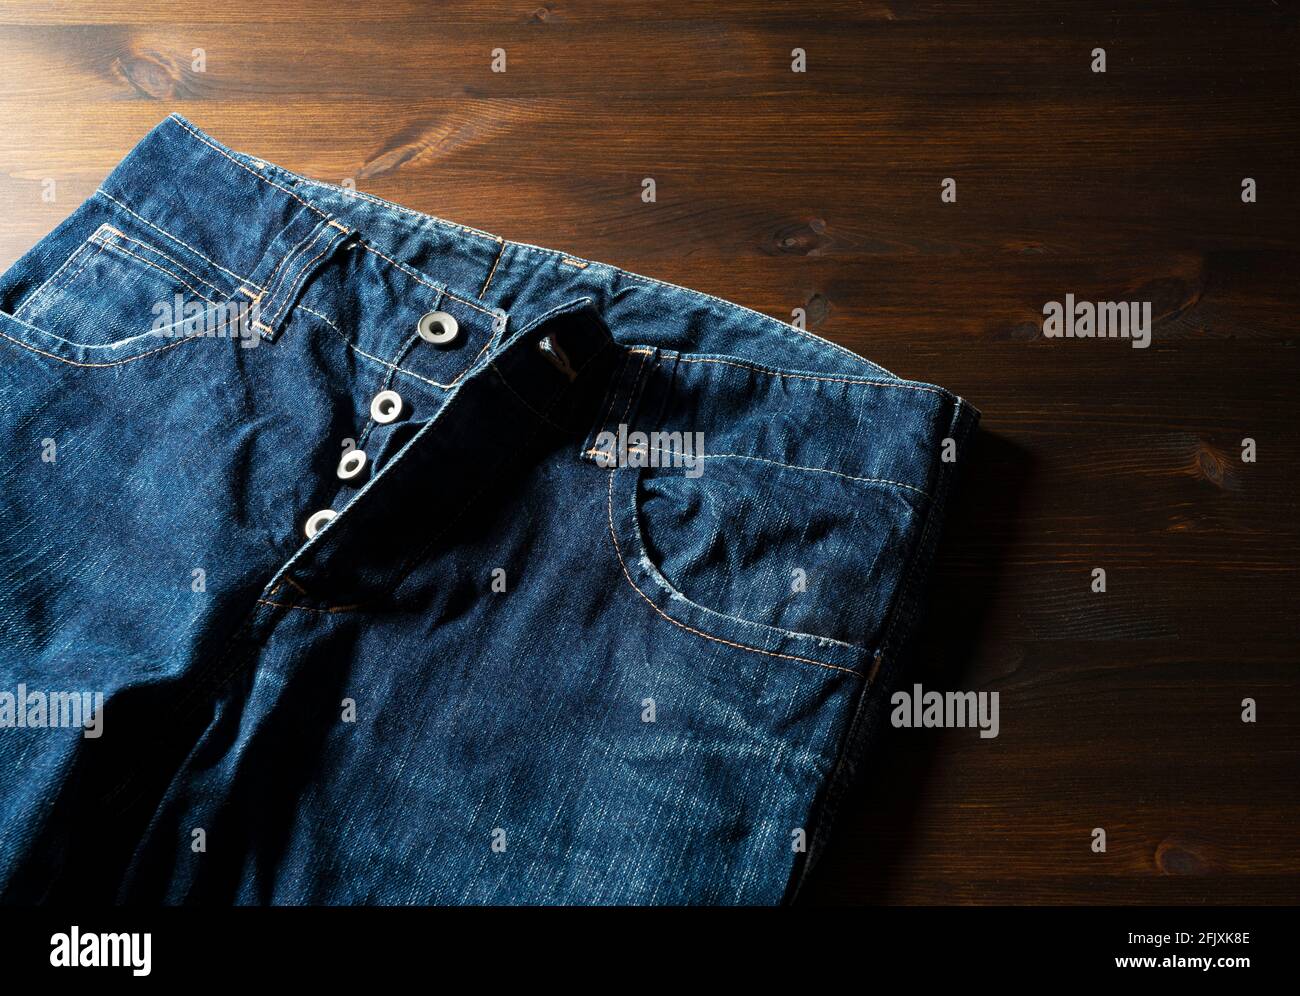 Foto de Pantalones vaqueros con bragueta de botones abierta do Stock